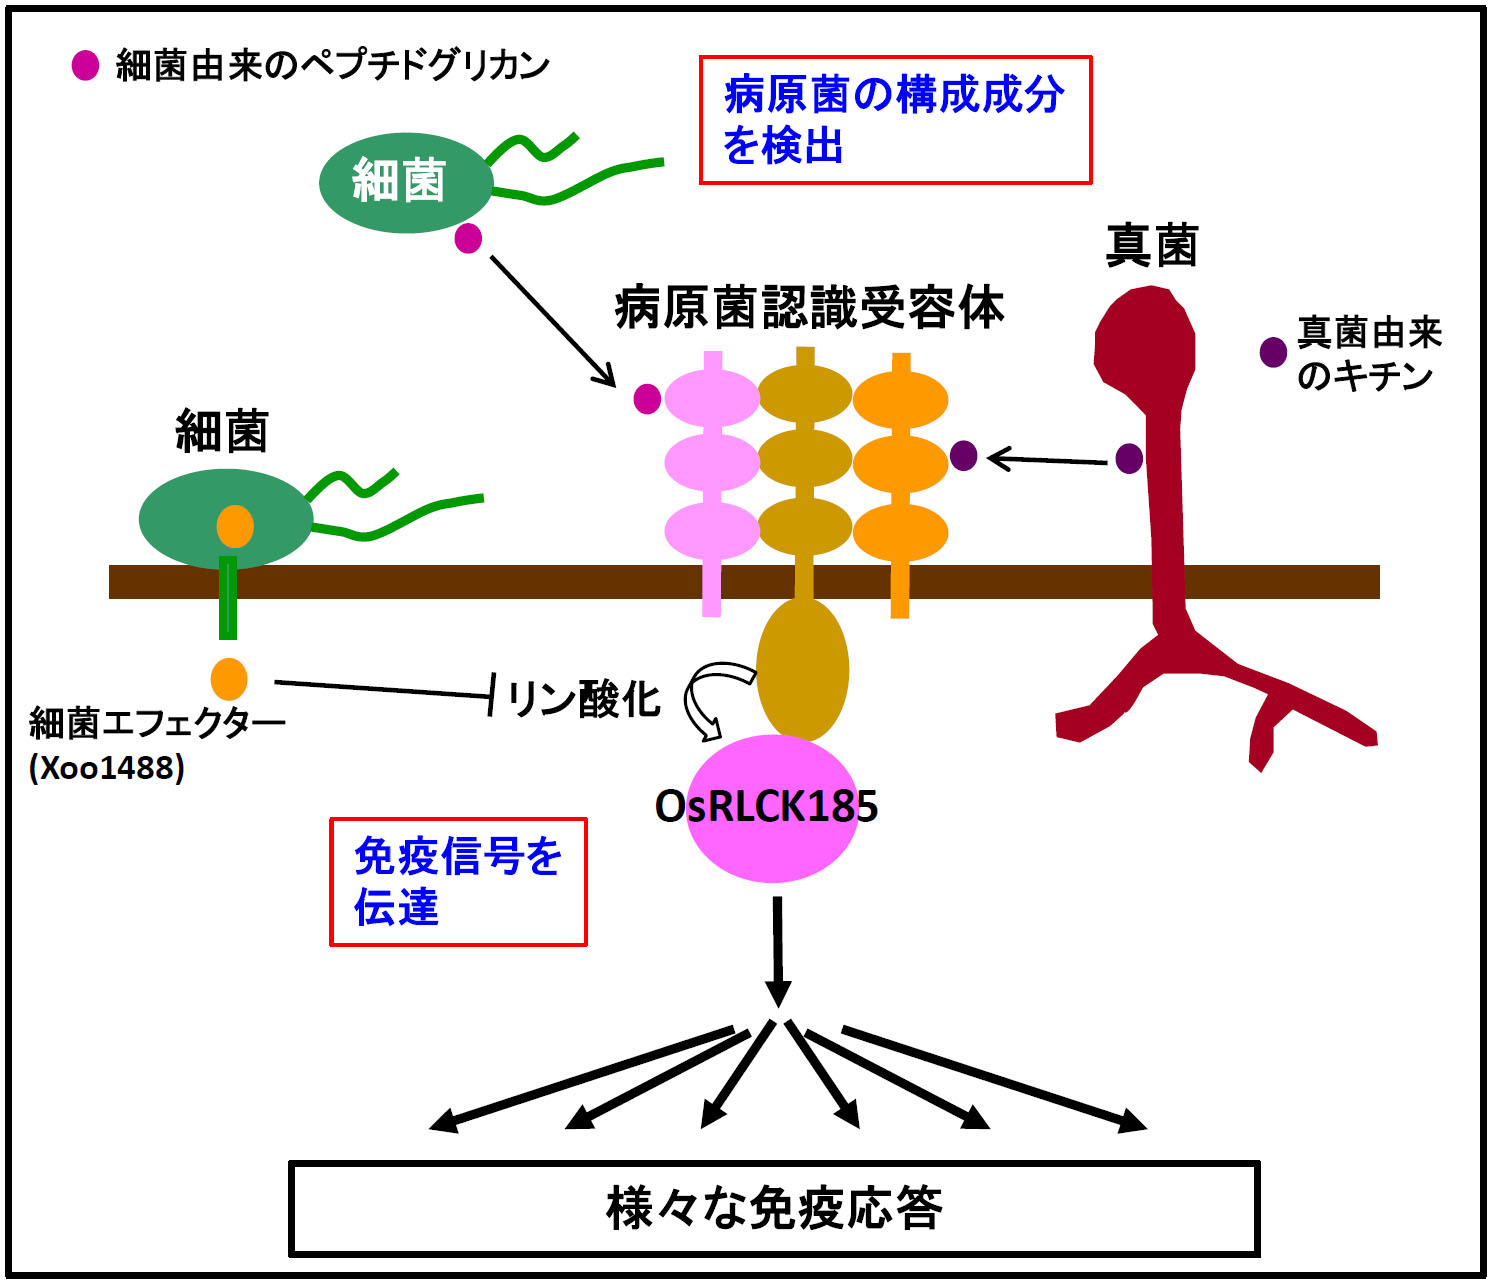 http://www.ige.tohoku.ac.jp/prg/genetics/study_report/upload_items/201303/kawasaki1.jpg